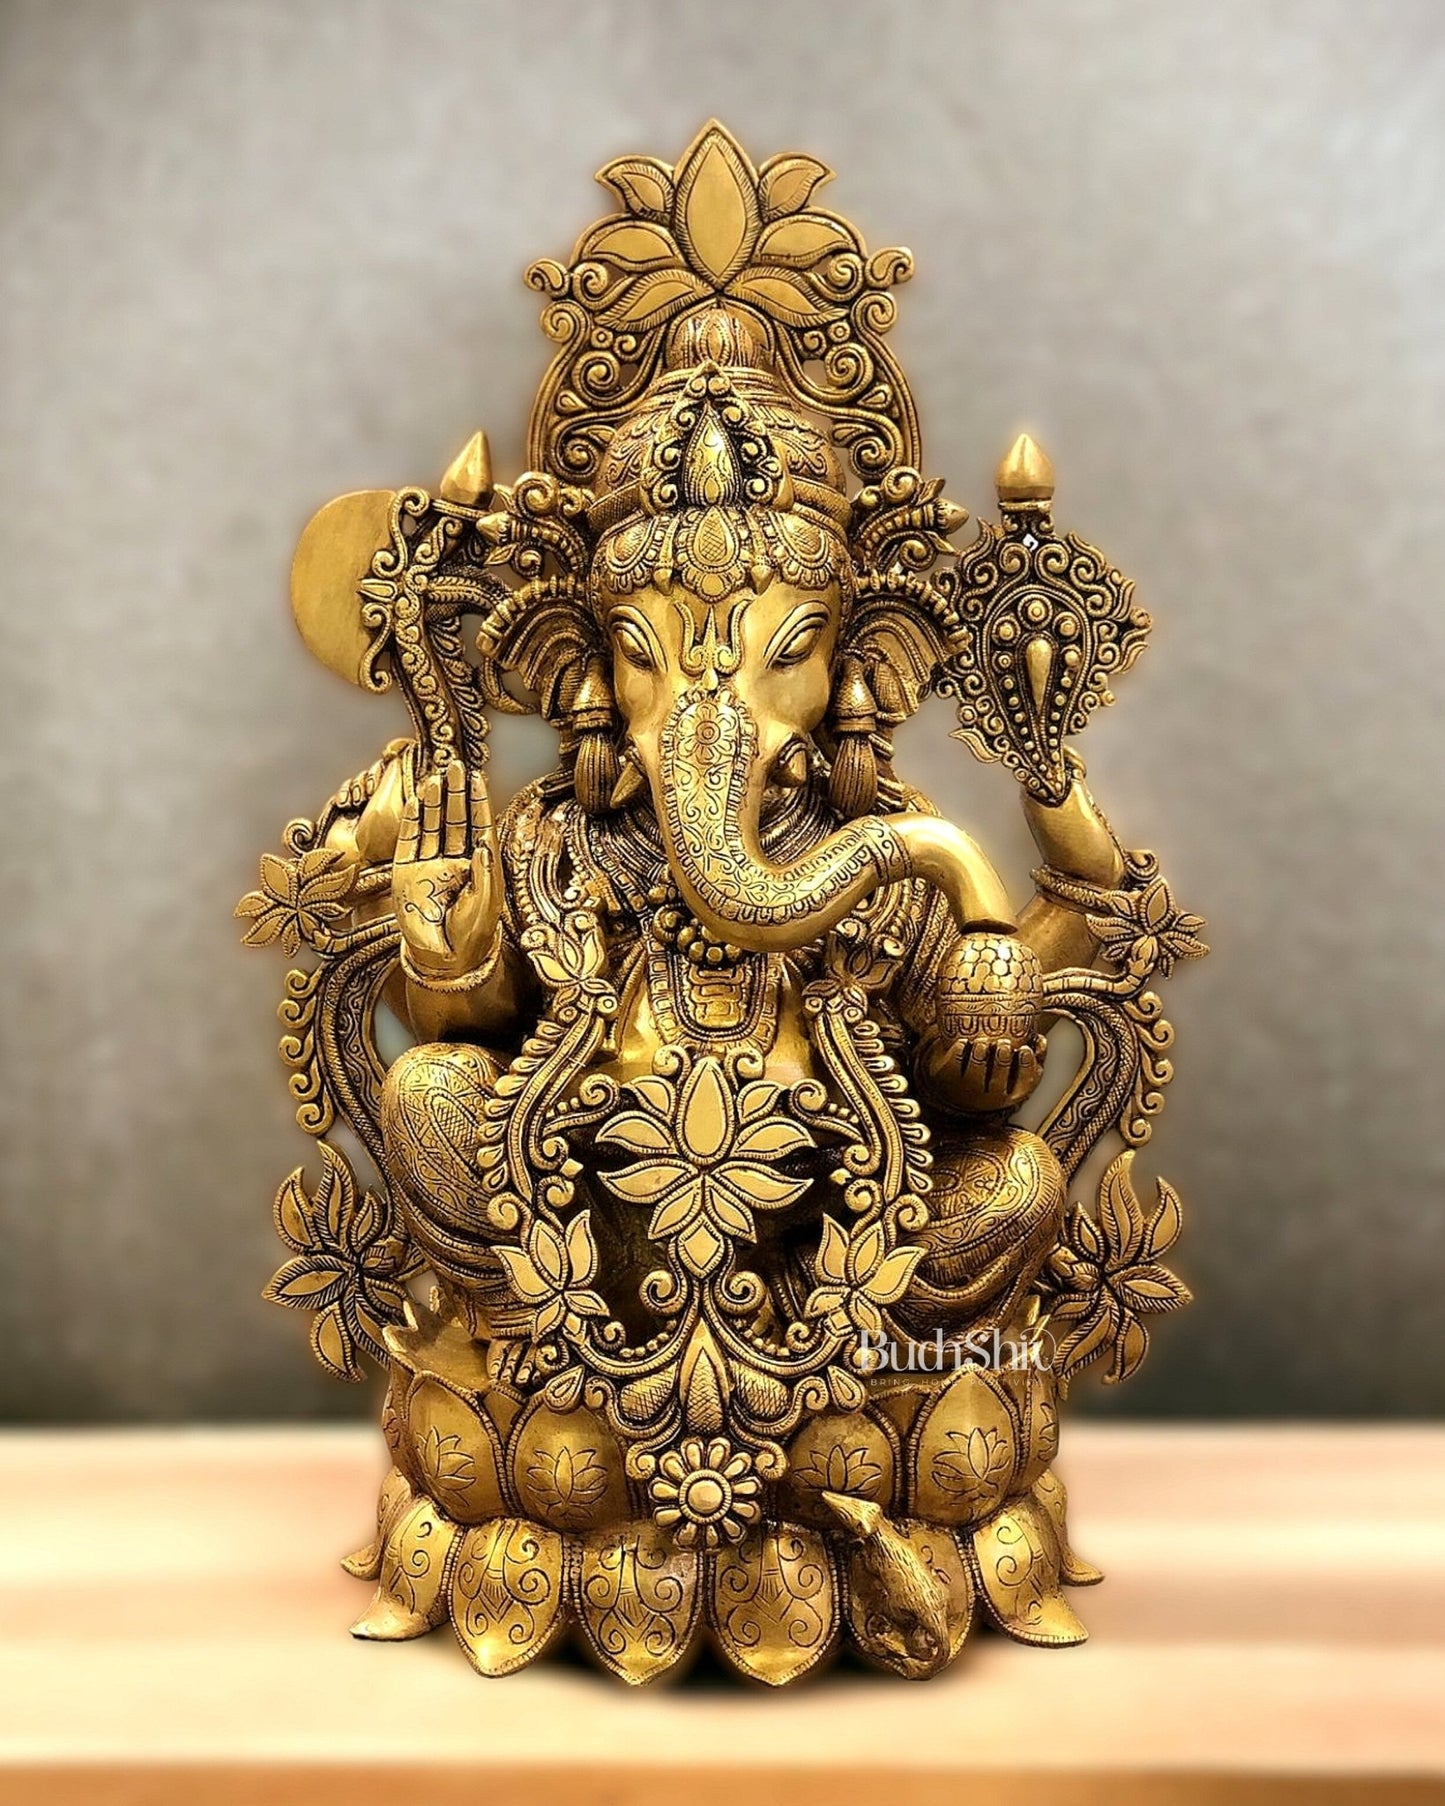 Elegant Brass Superfine Lord Ganesha Idol with Lotus - 23.5" - Budhshiv.com